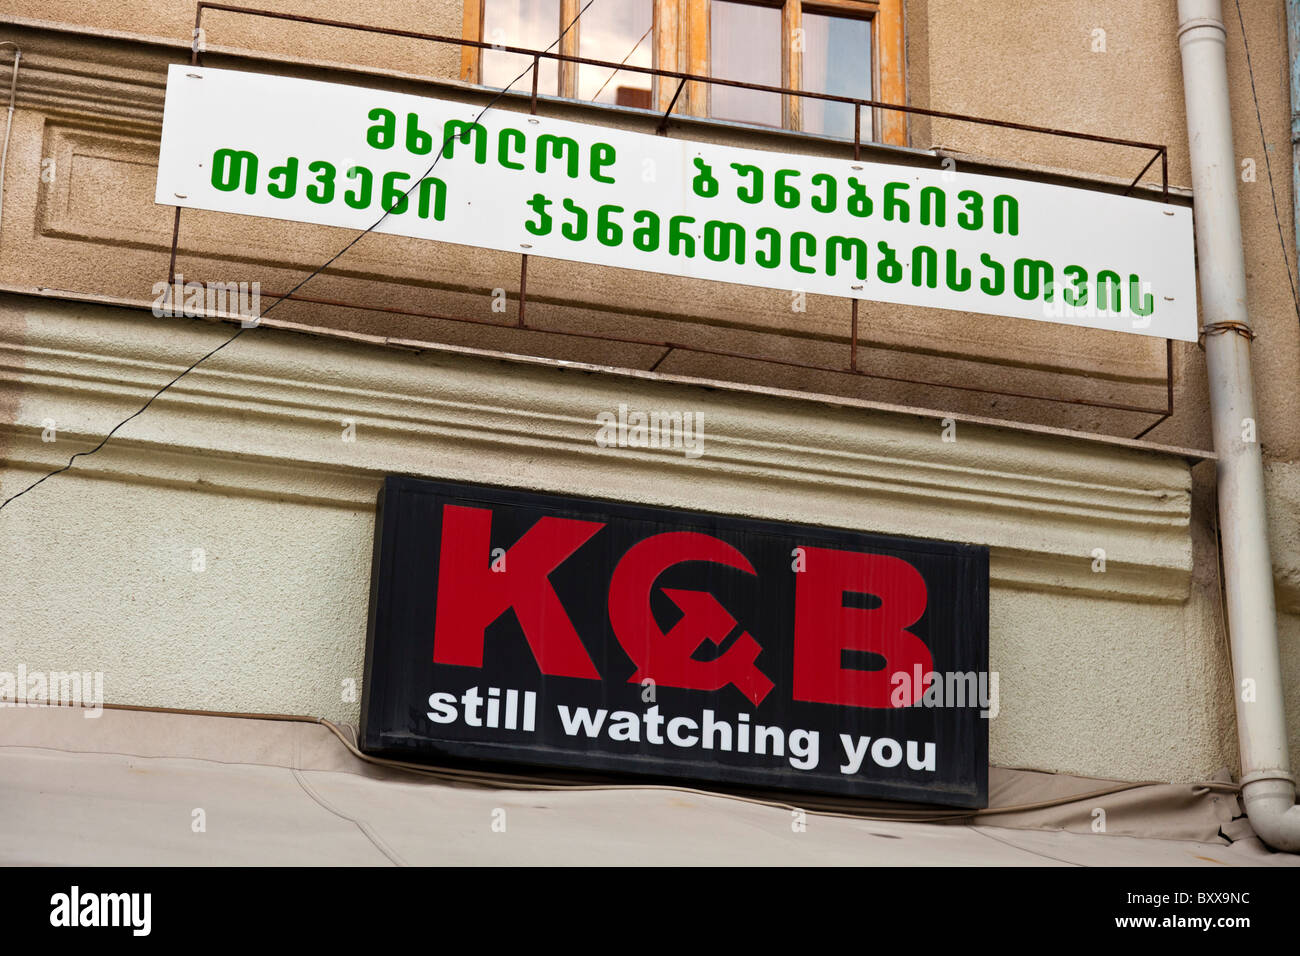 KGB noch watching you - schwarzer Humor in einem Restaurantnamen in Vereinigte Arabische Emirate. JMH4076 Stockfoto